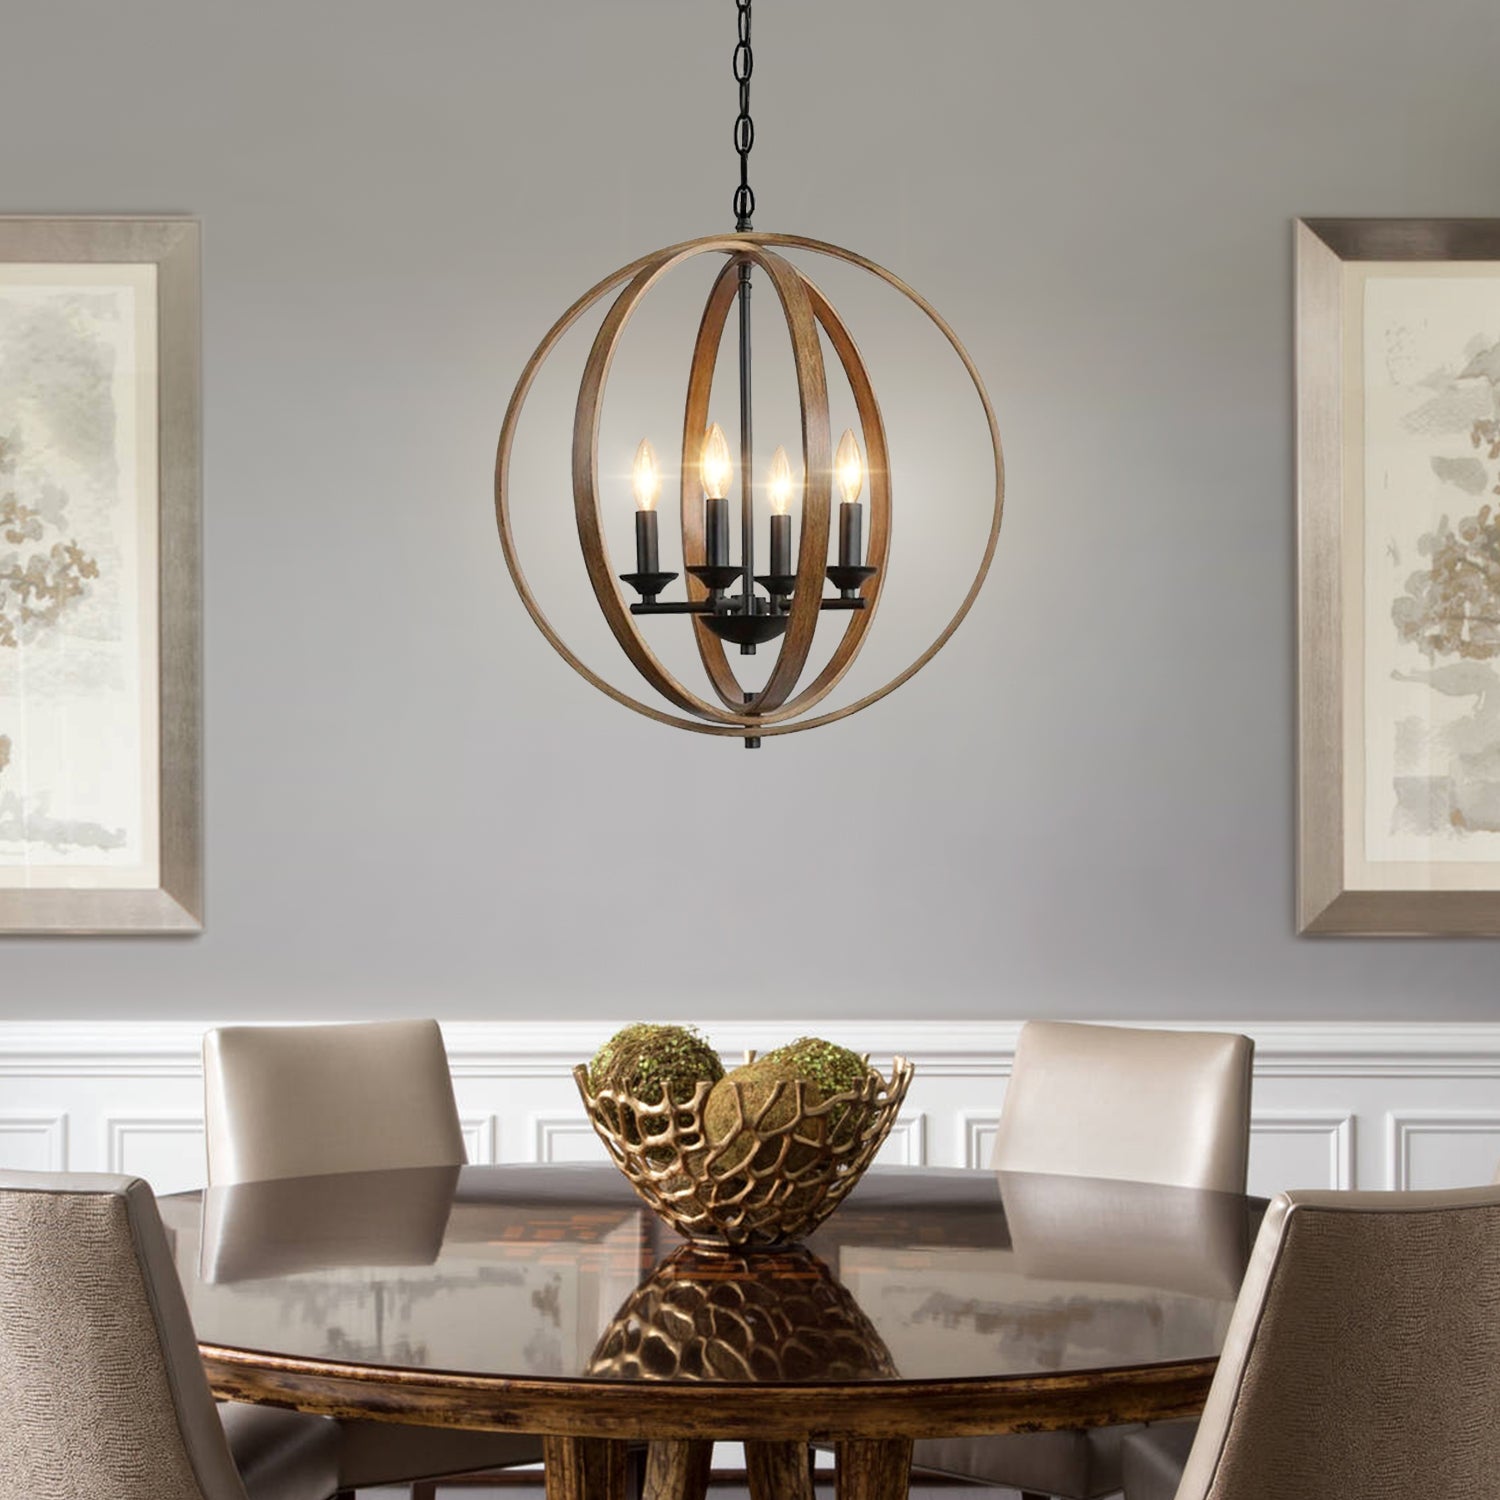 24 Black & Bronze Round Antique-Style 6-Light Hanging Chandelier